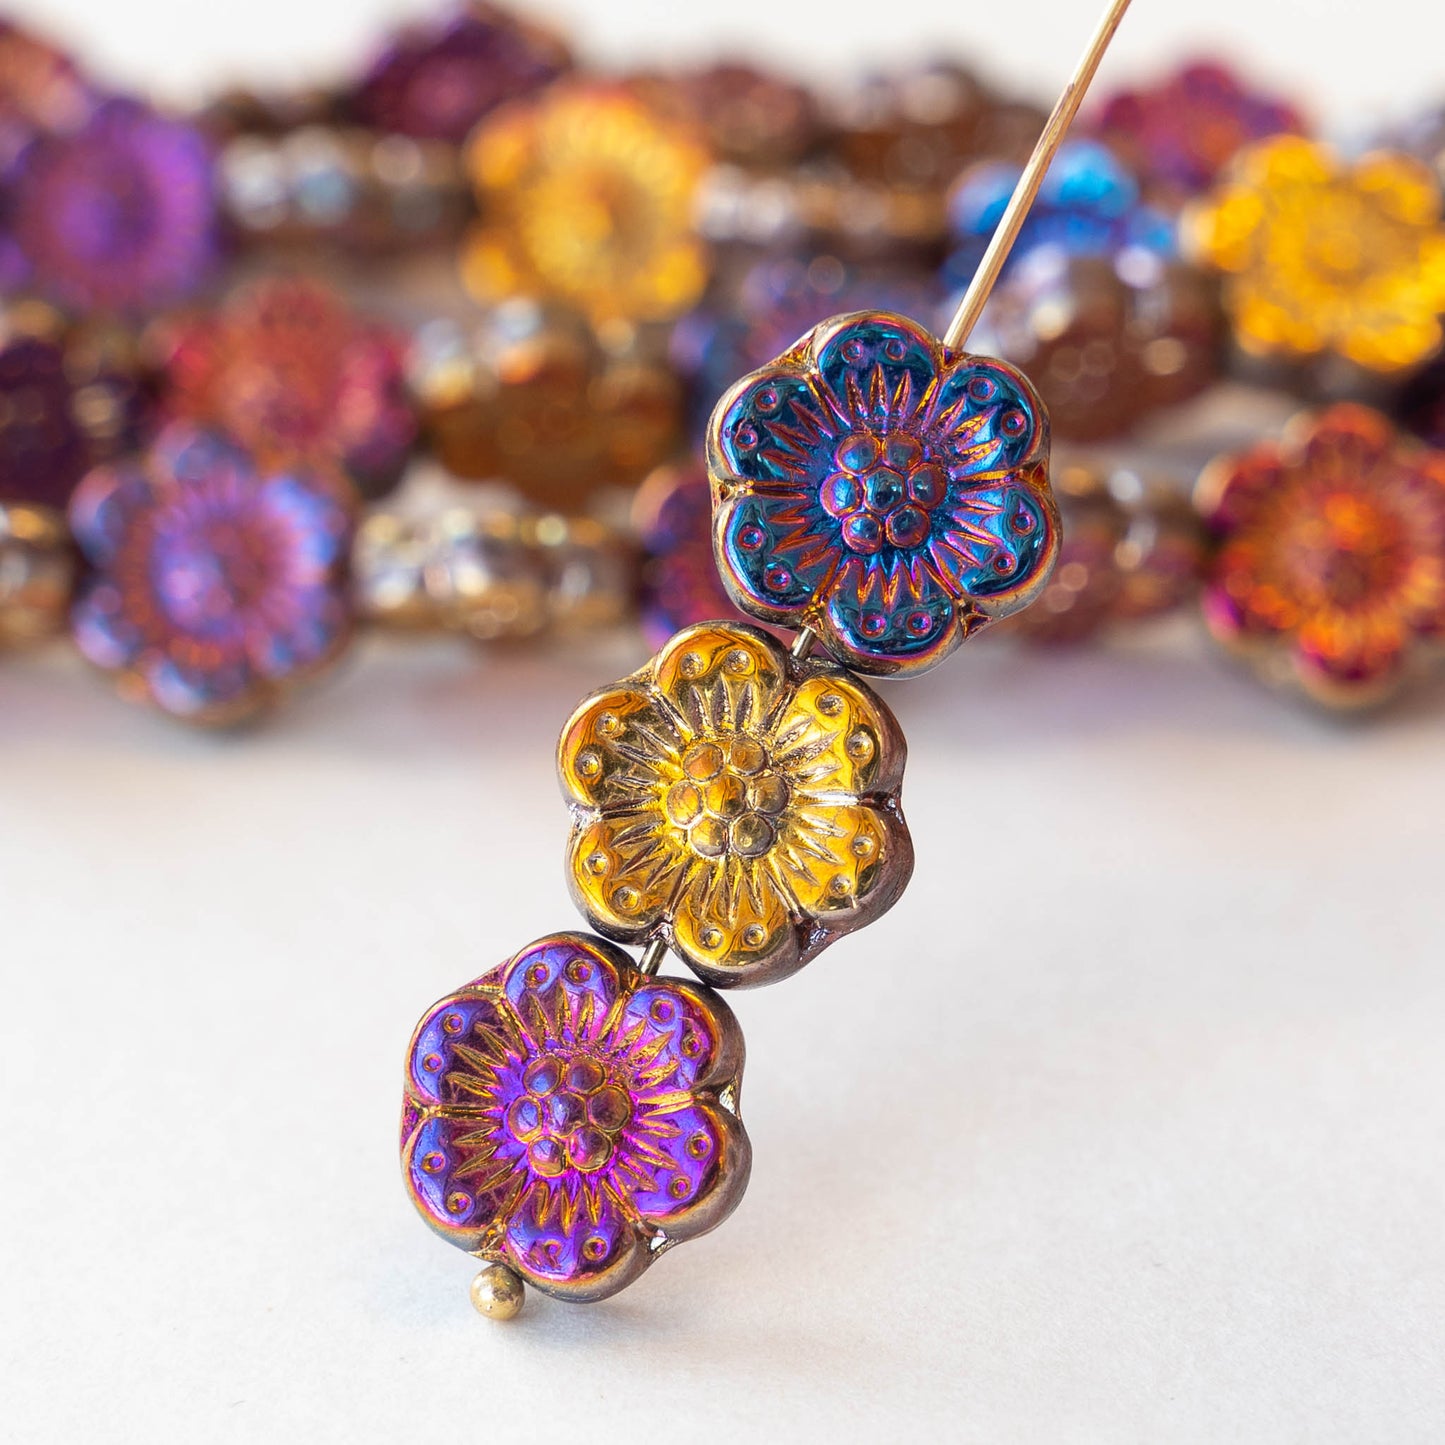 14mm Anemone Flower Beads - Metallic Iris Mix - 10 Beads